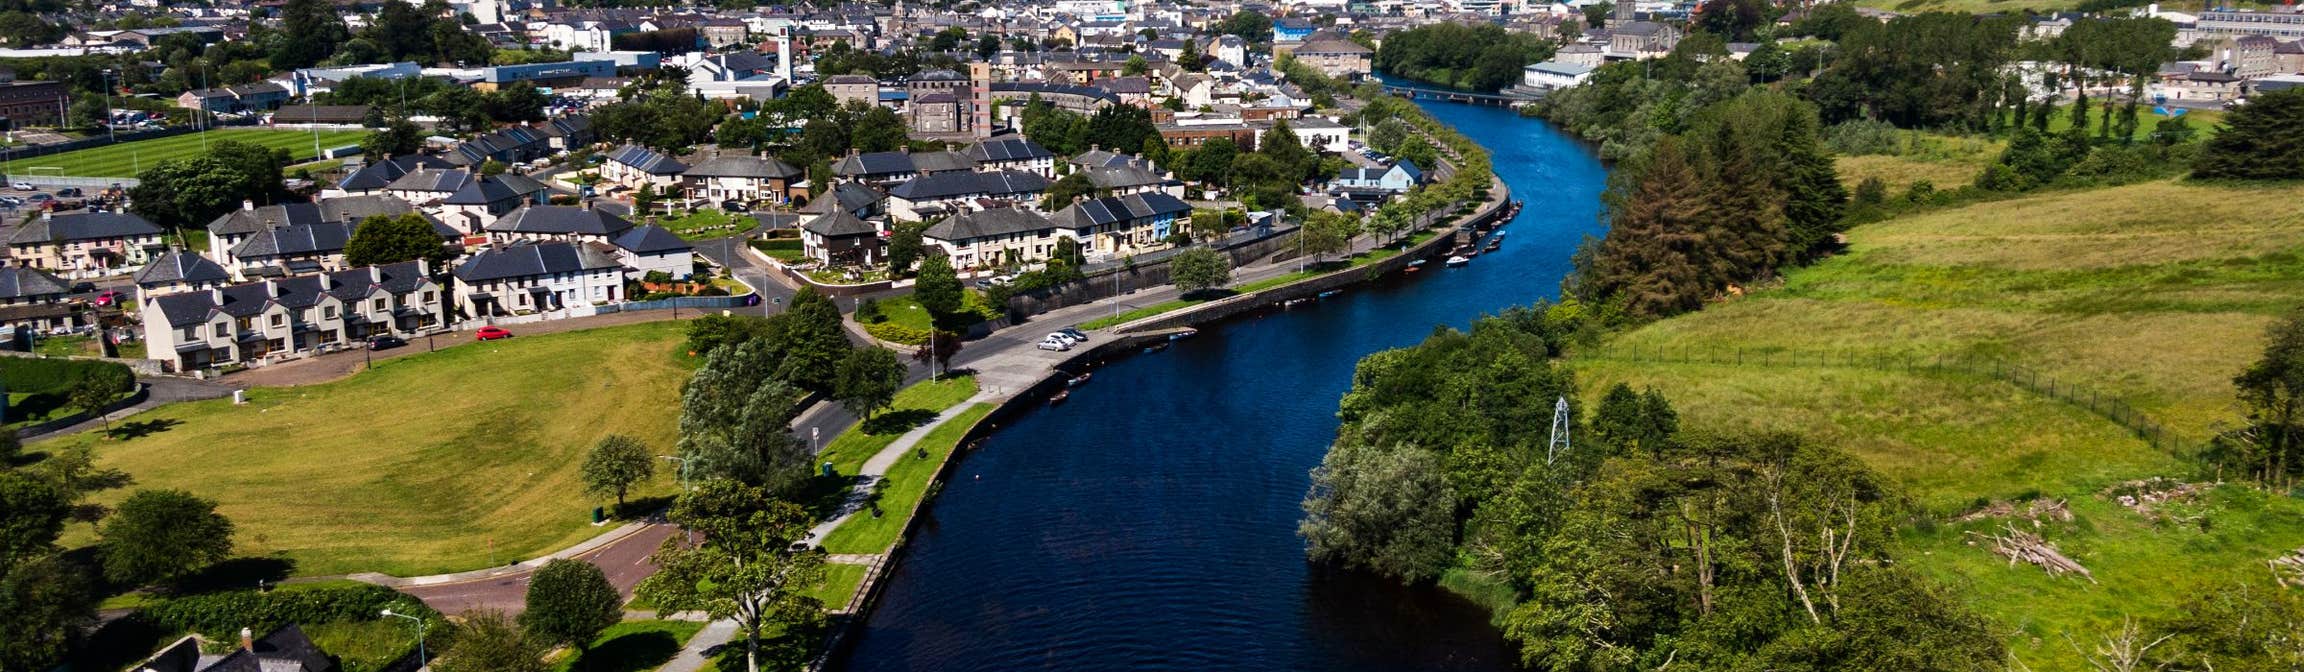 Image of Sligo Town in County Sligo